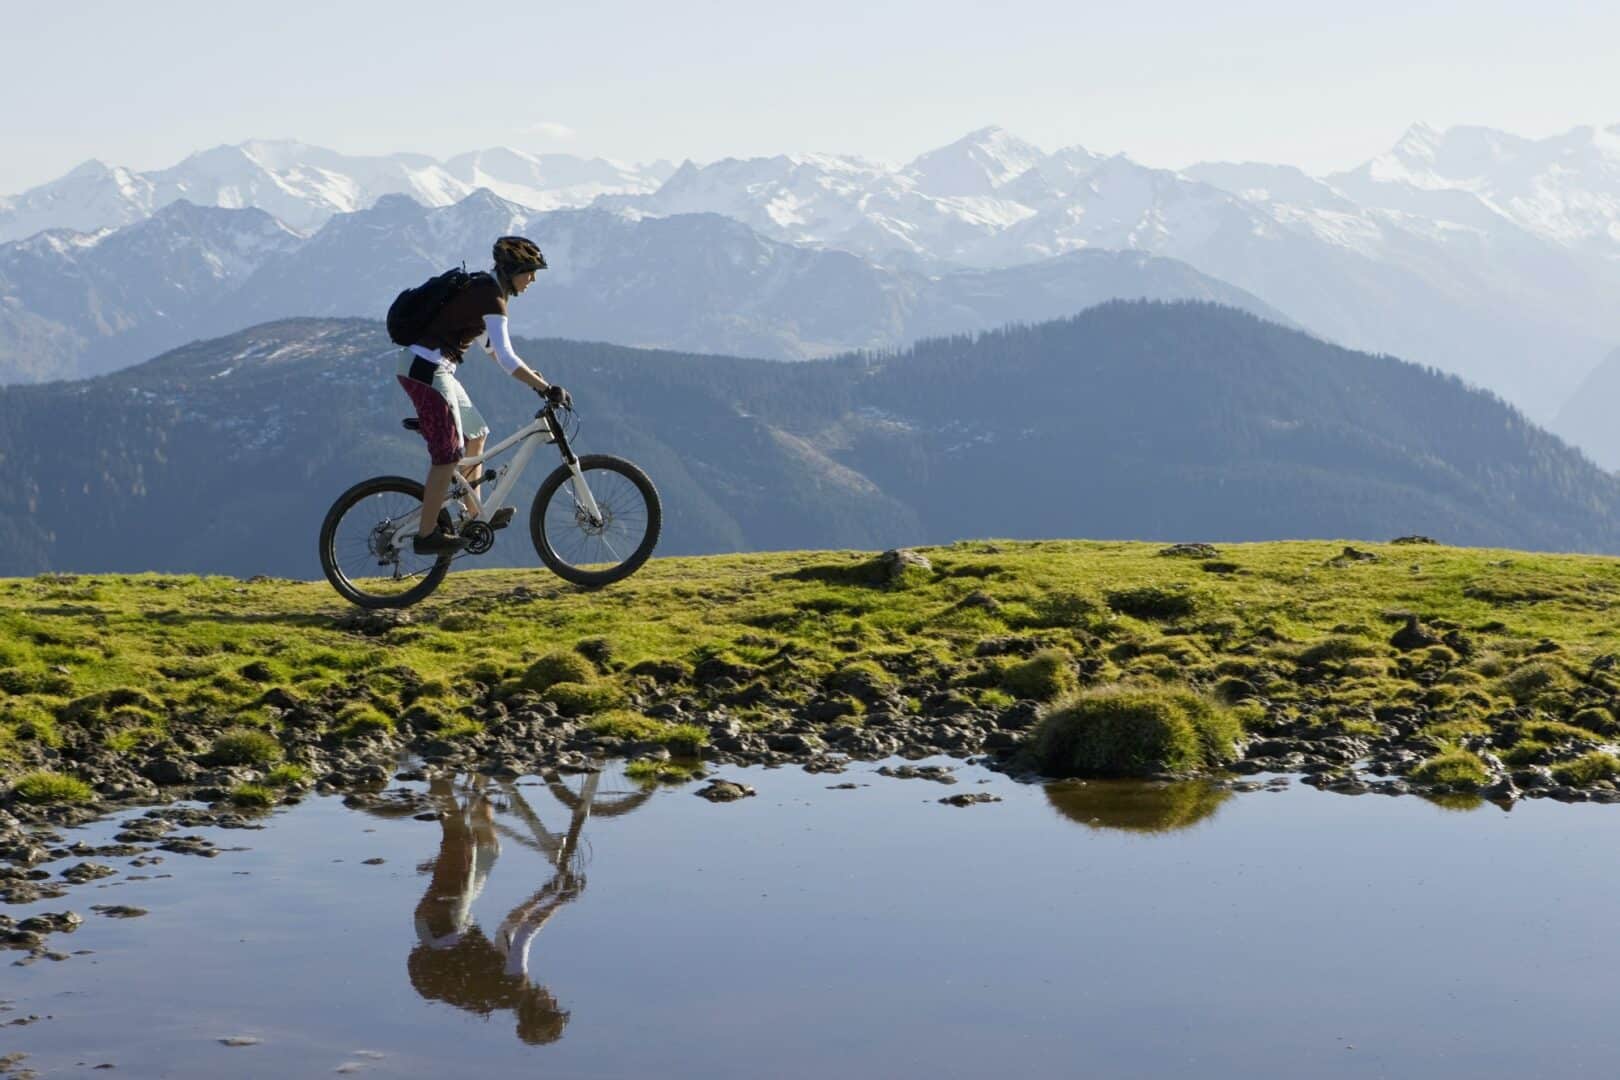 Austria, Salzburger Land, Zell am See, Woman mountain biking